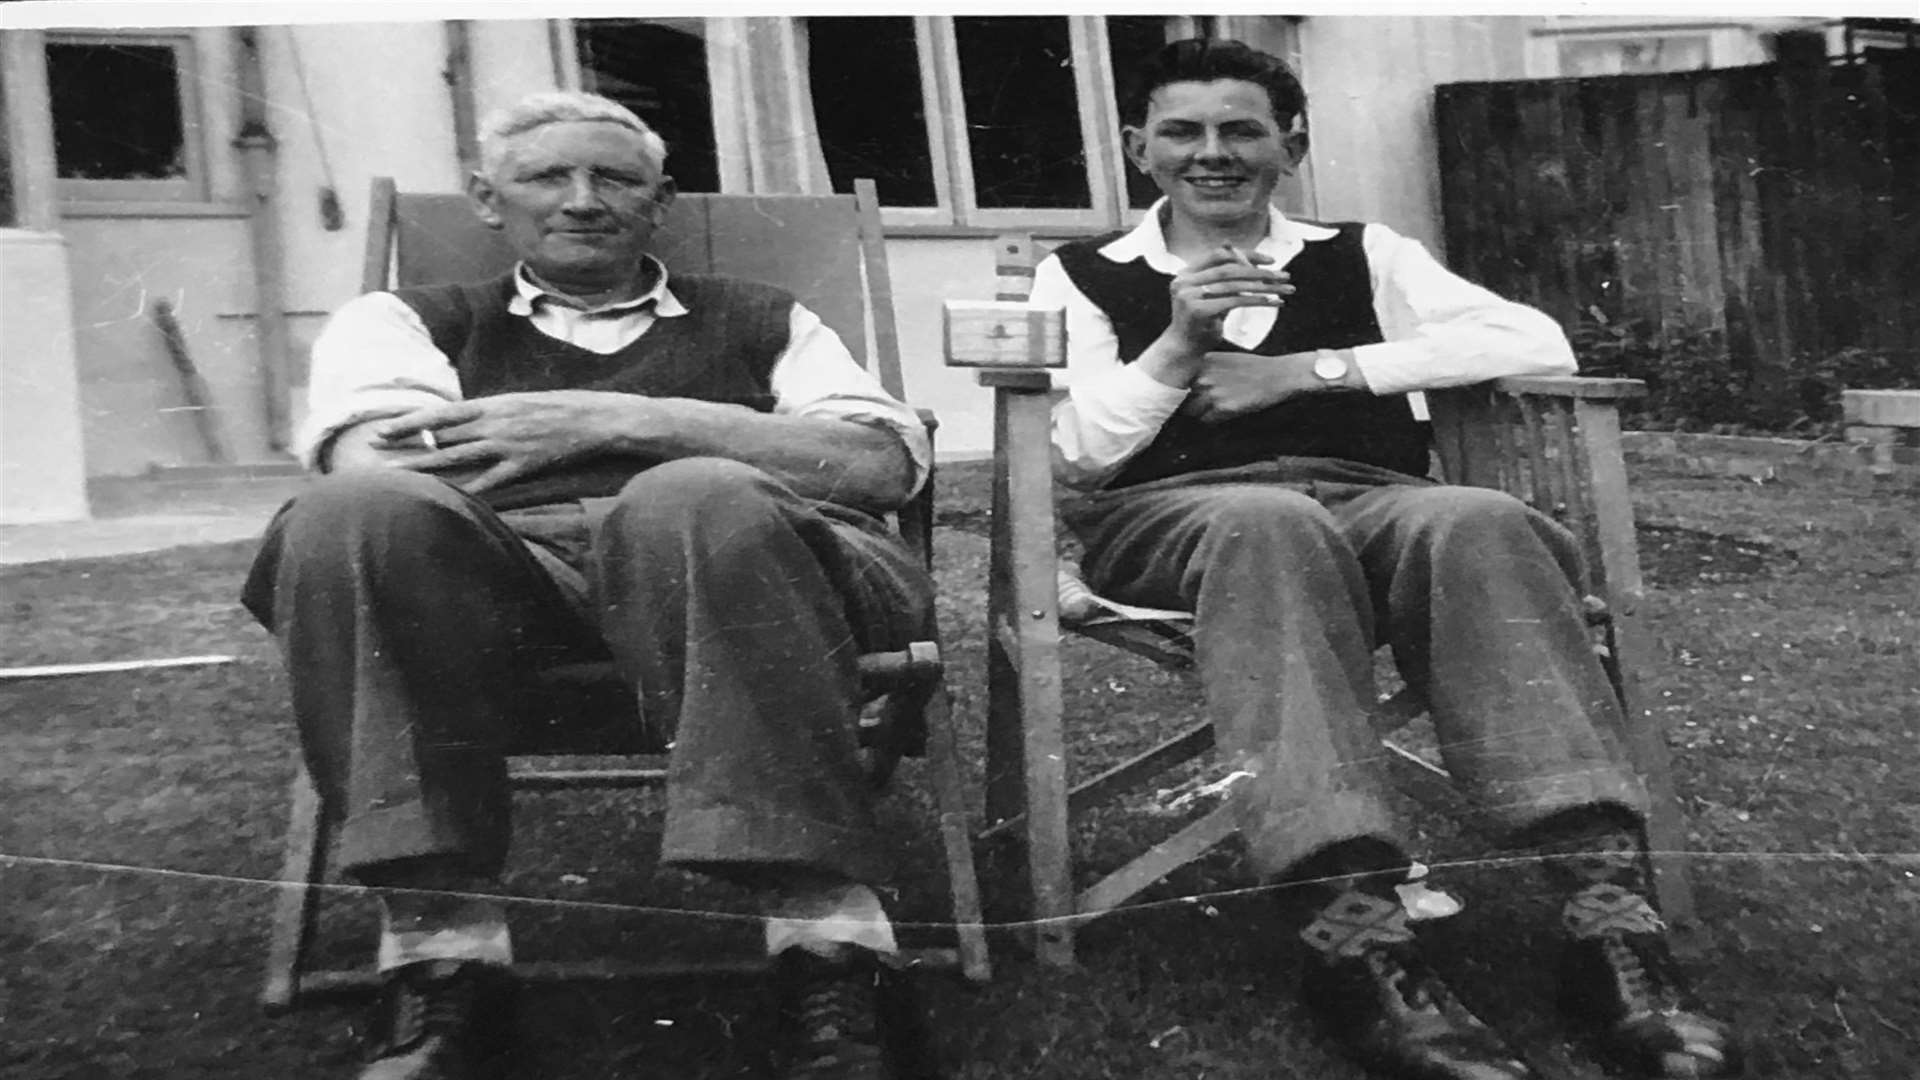 Tony Larkin (right) with his foster father Major John Herbert O'Neill